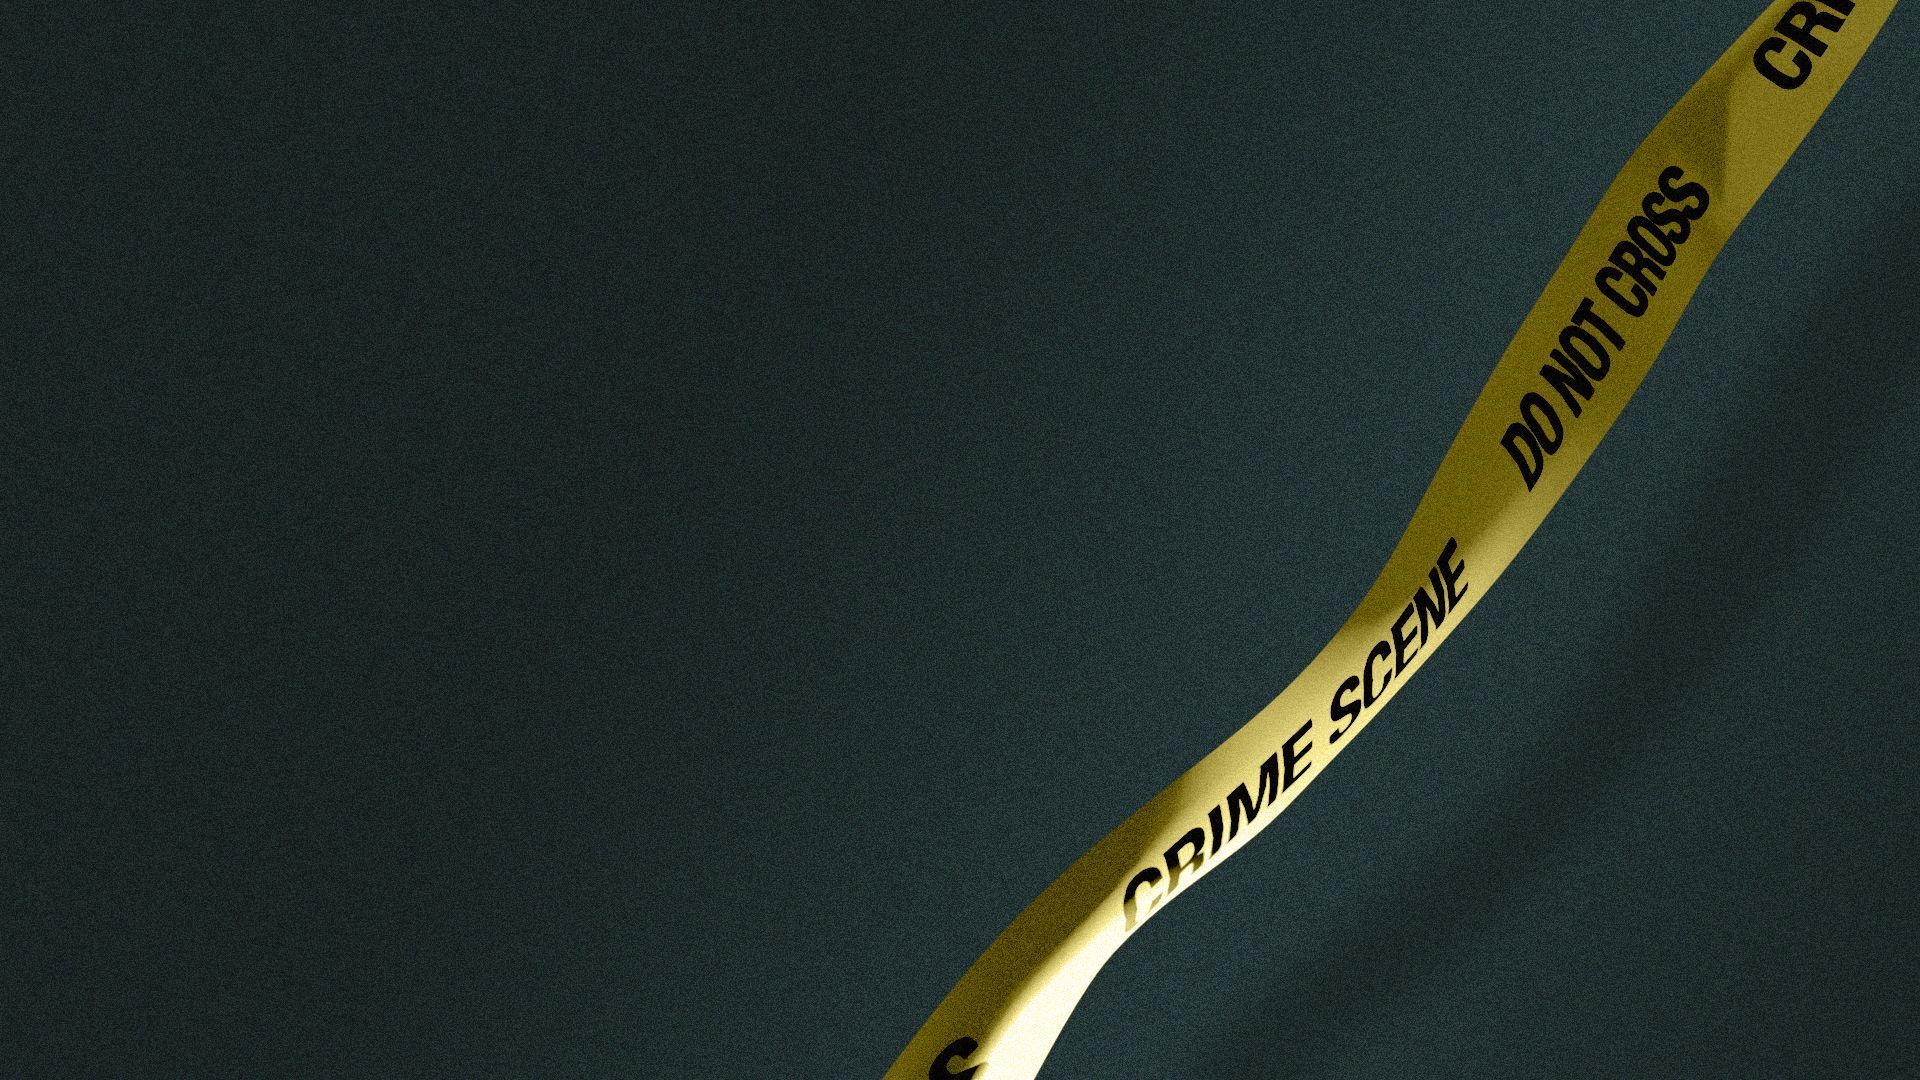 Illustration of crime scene tape reading CRIME SCENE and DO NOT CROSS over a dark background.